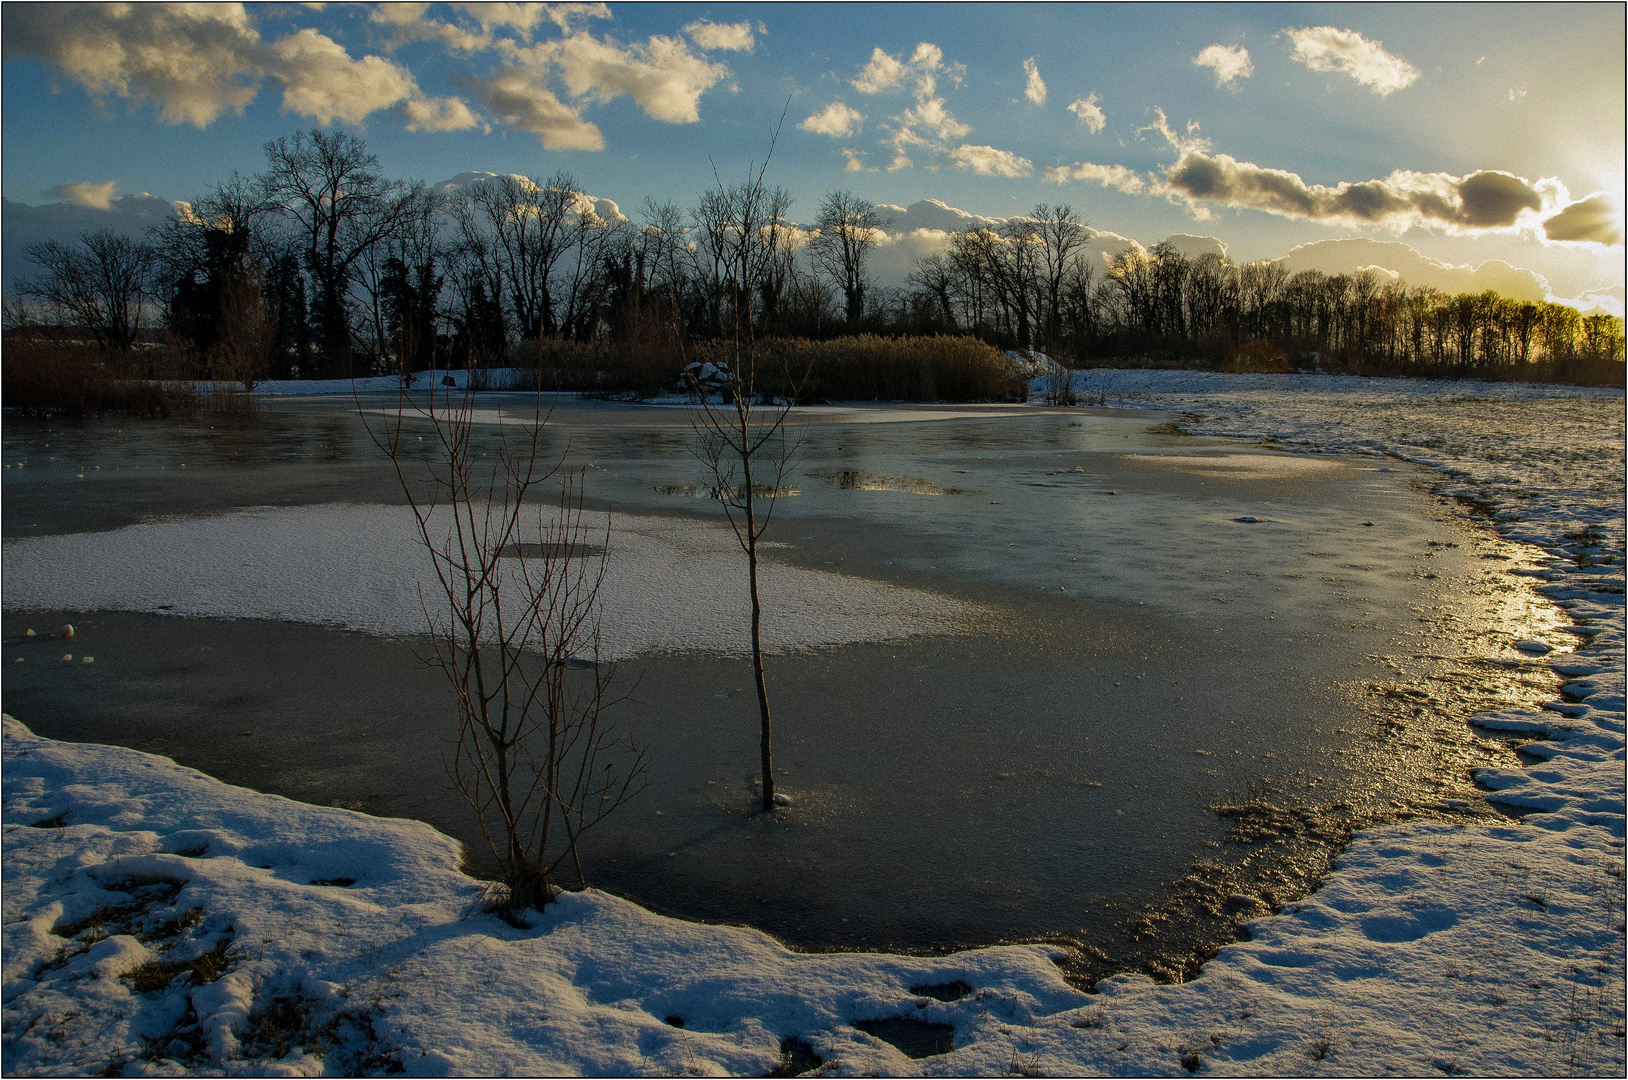 tiefe Sonne am Teich